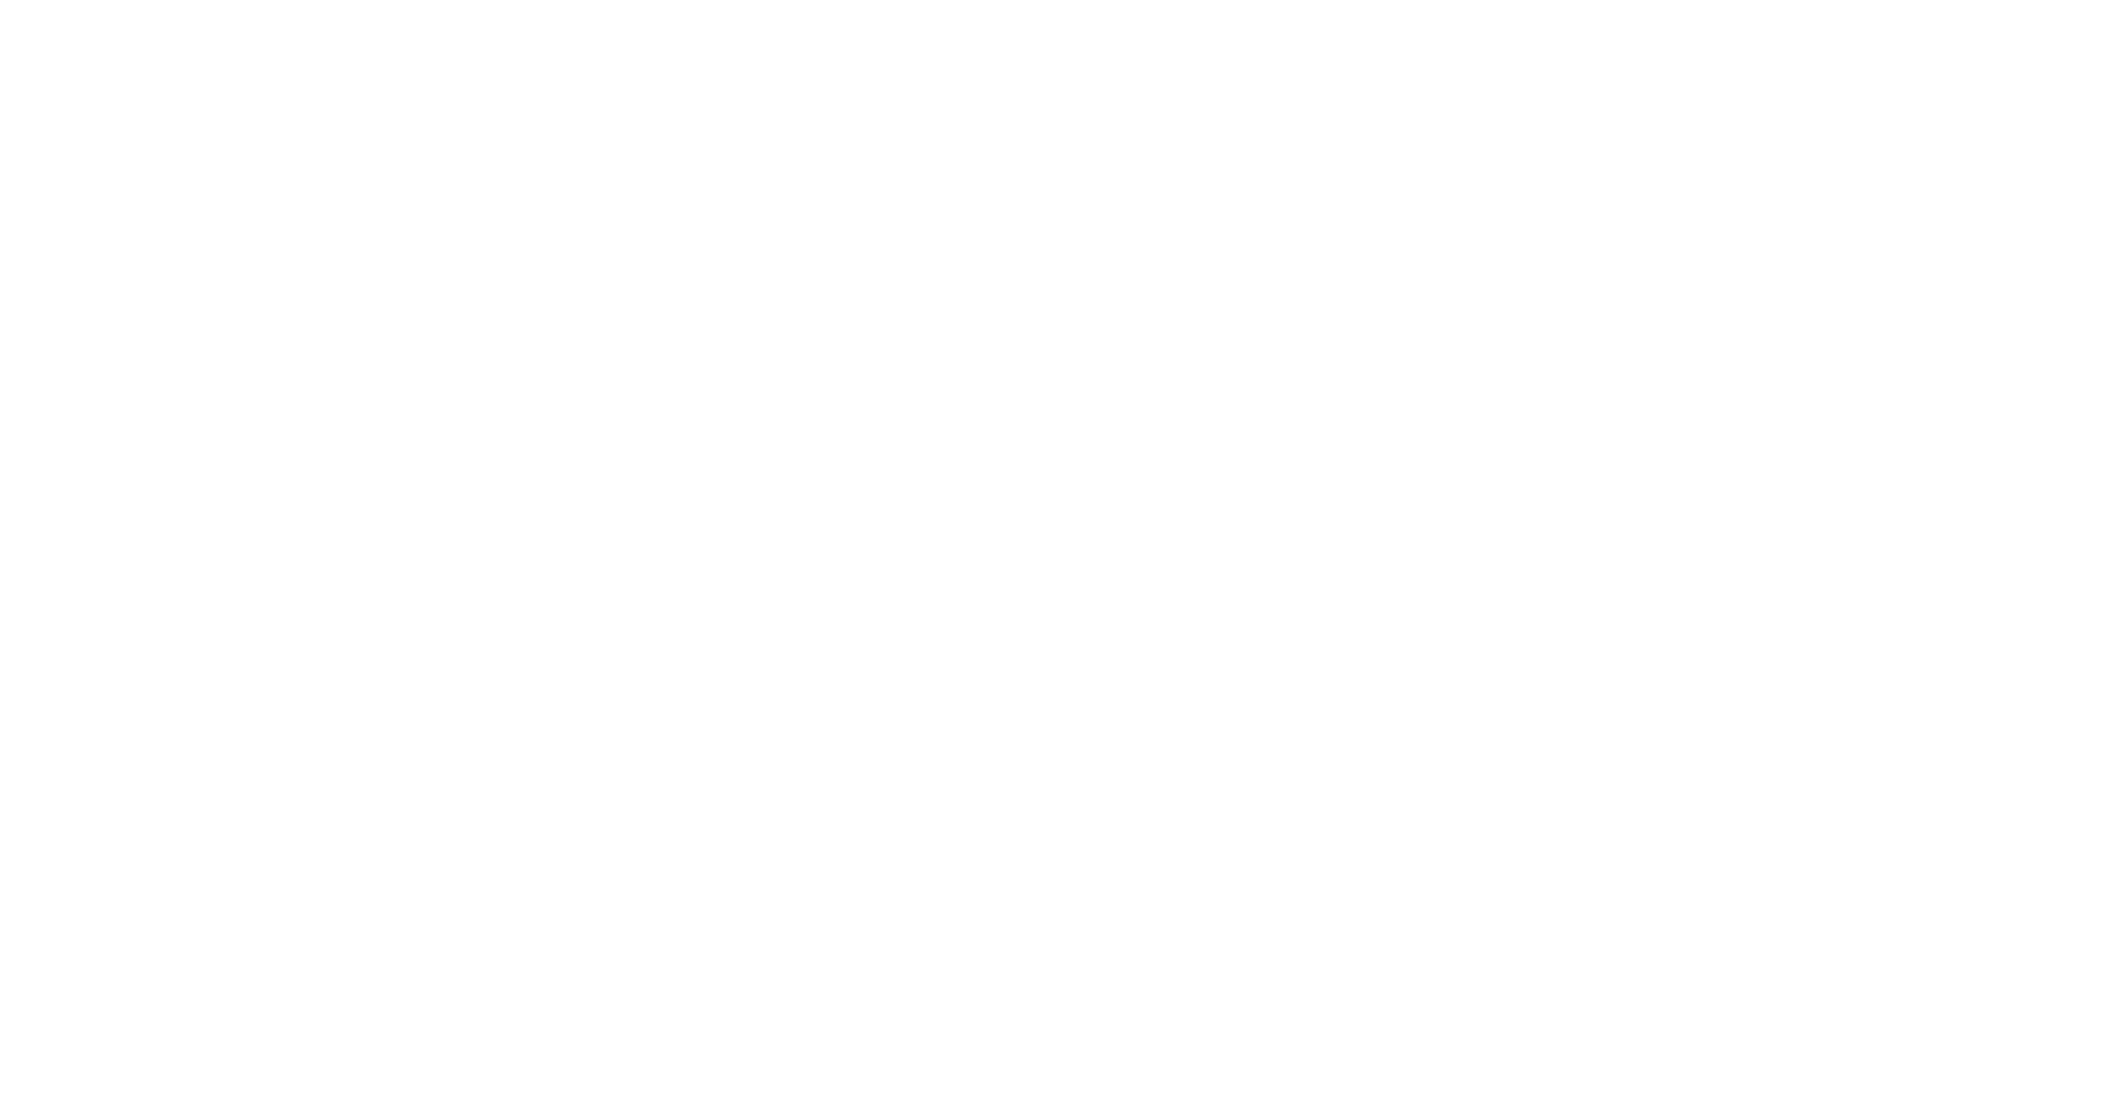 VITS Logo